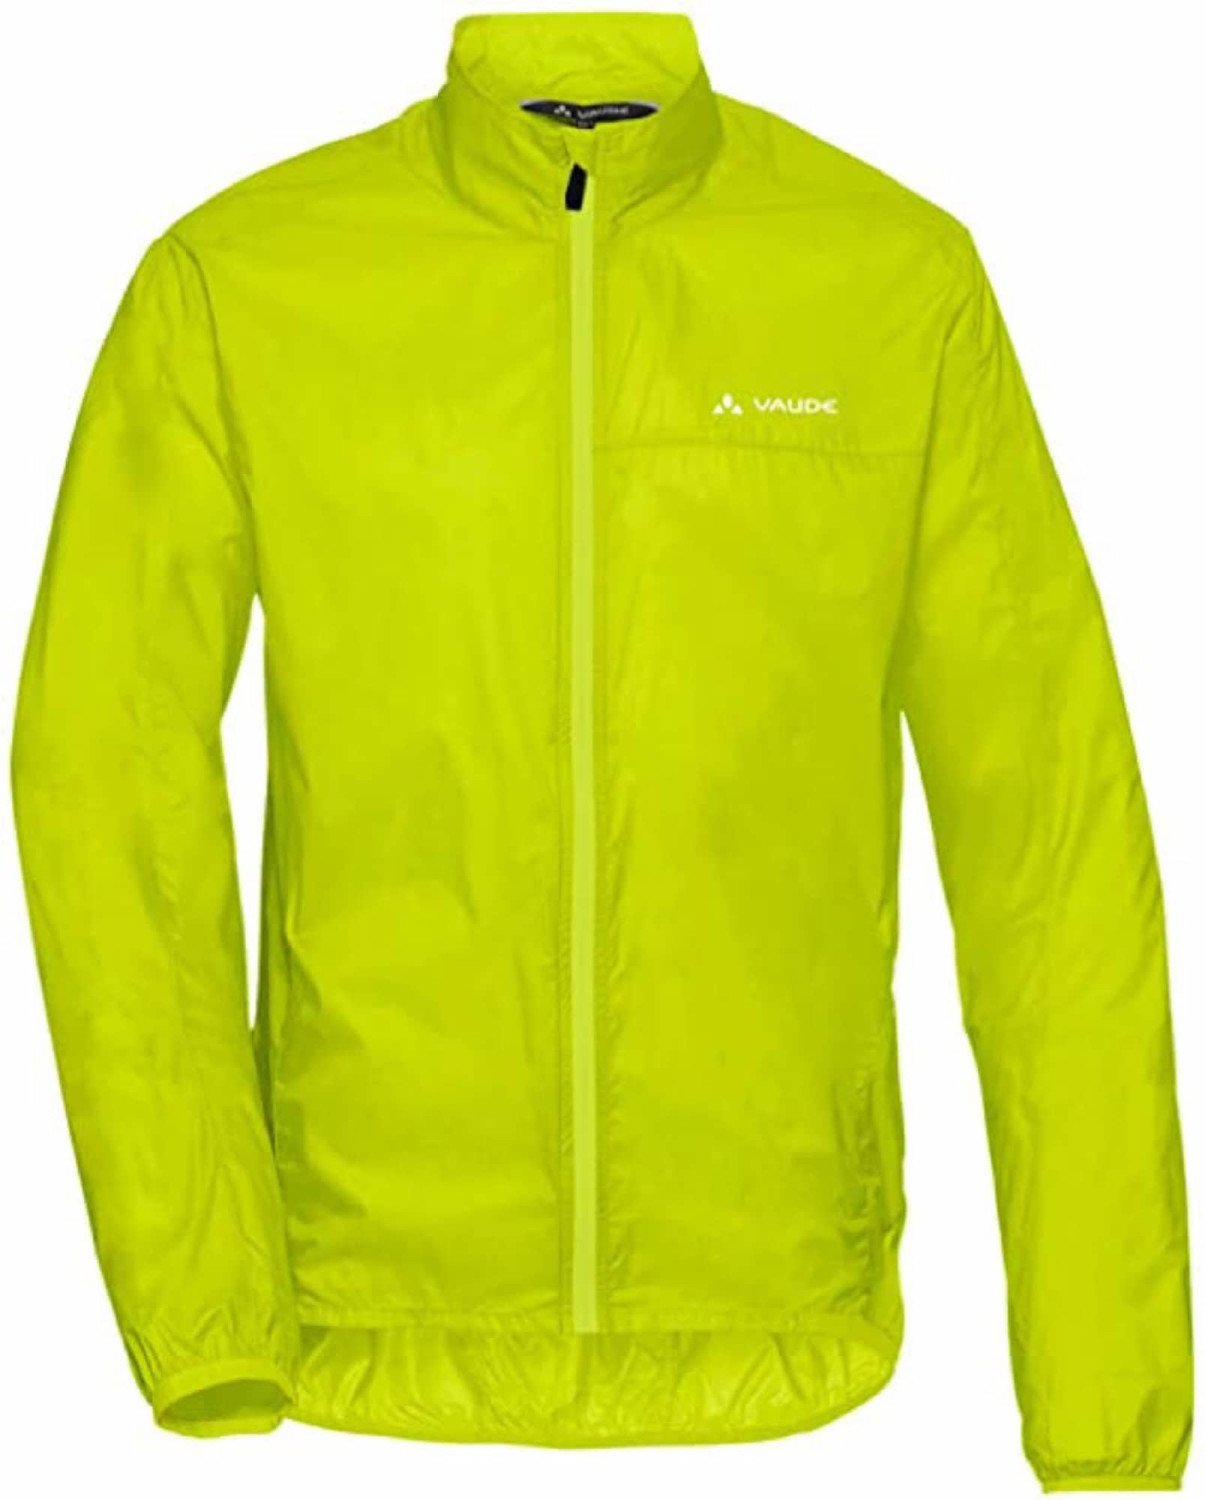 VAUDE Men's Air Jacket III bright green ab 34,95 € | Preisvergleich bei